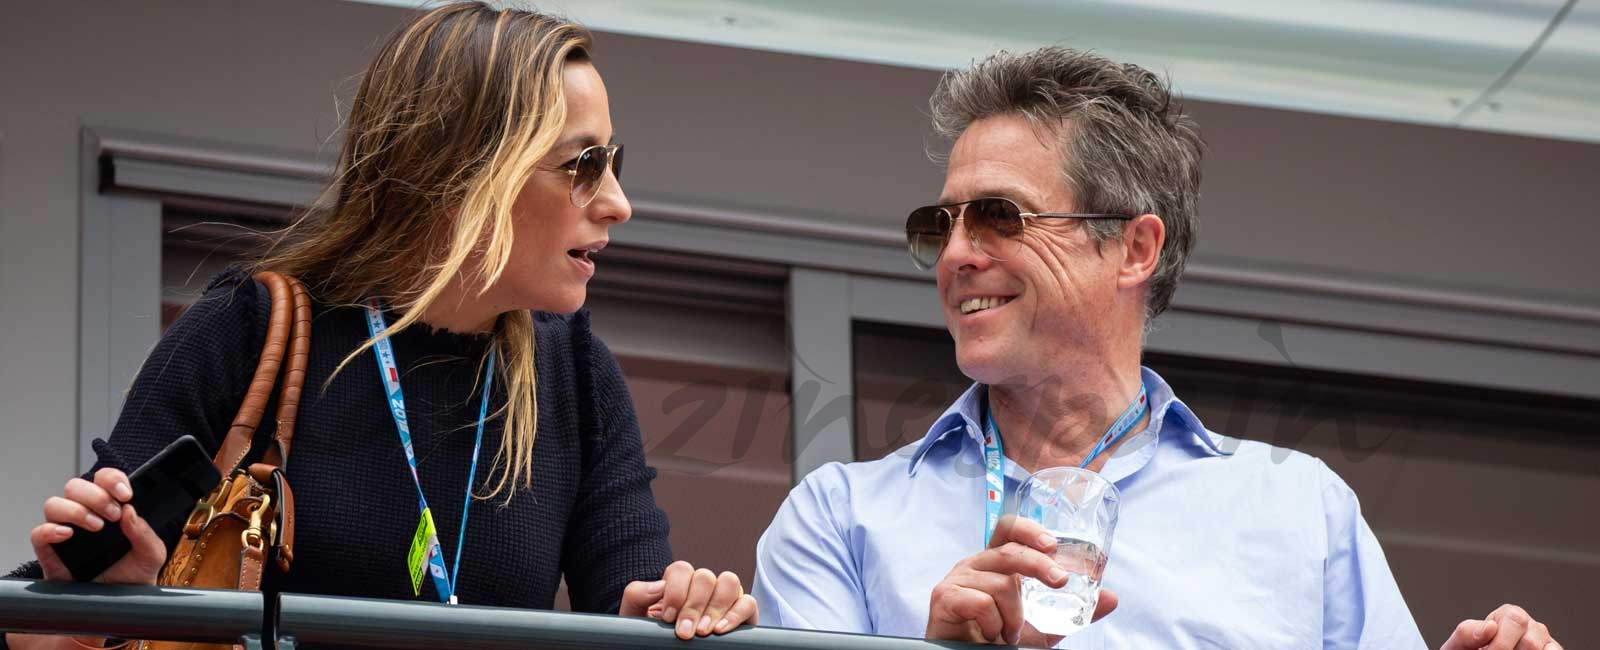 Hugh Grant y Anna Eberstein, luna de miel en la F1